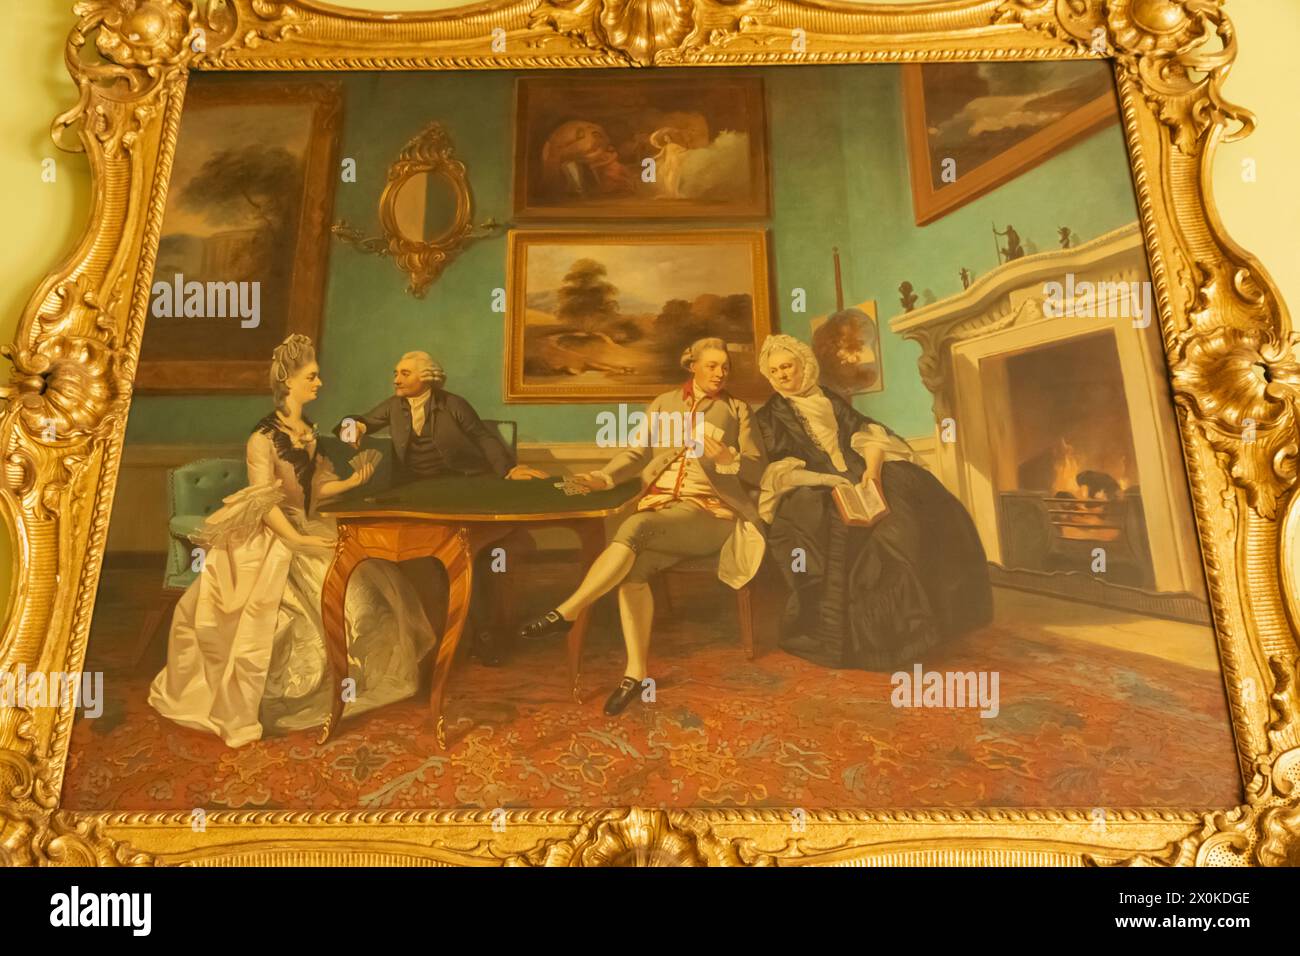 Inglaterra, Hampshire, Hinton Hampner, Hinton Hampner Country House, el comedor, pintura de la familia Dutton jugando a las cartas Foto de stock